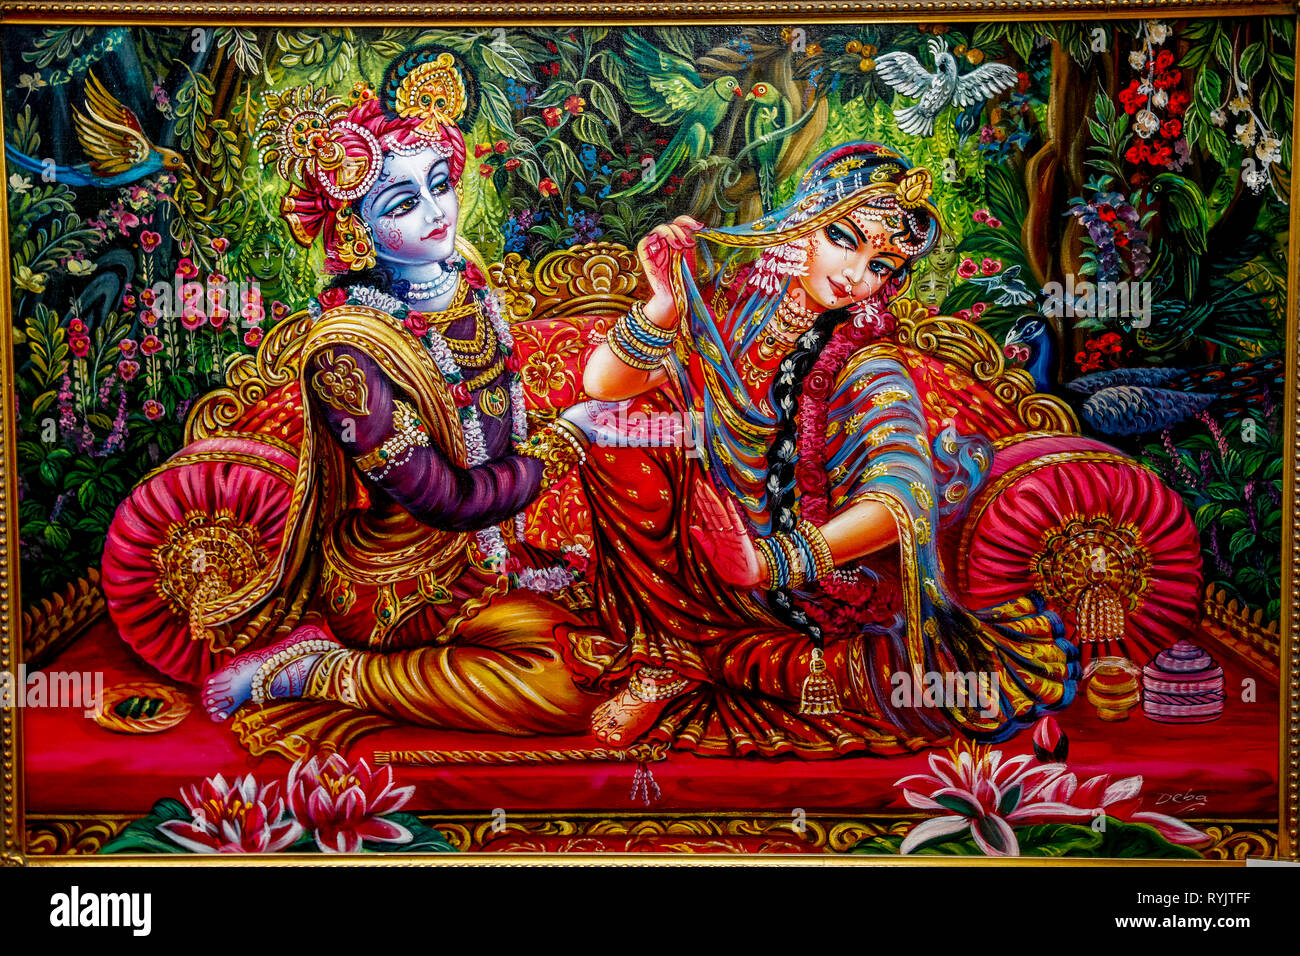 HARE KRISHNA  Krishna art, Radha krishna art, Krishna hindu